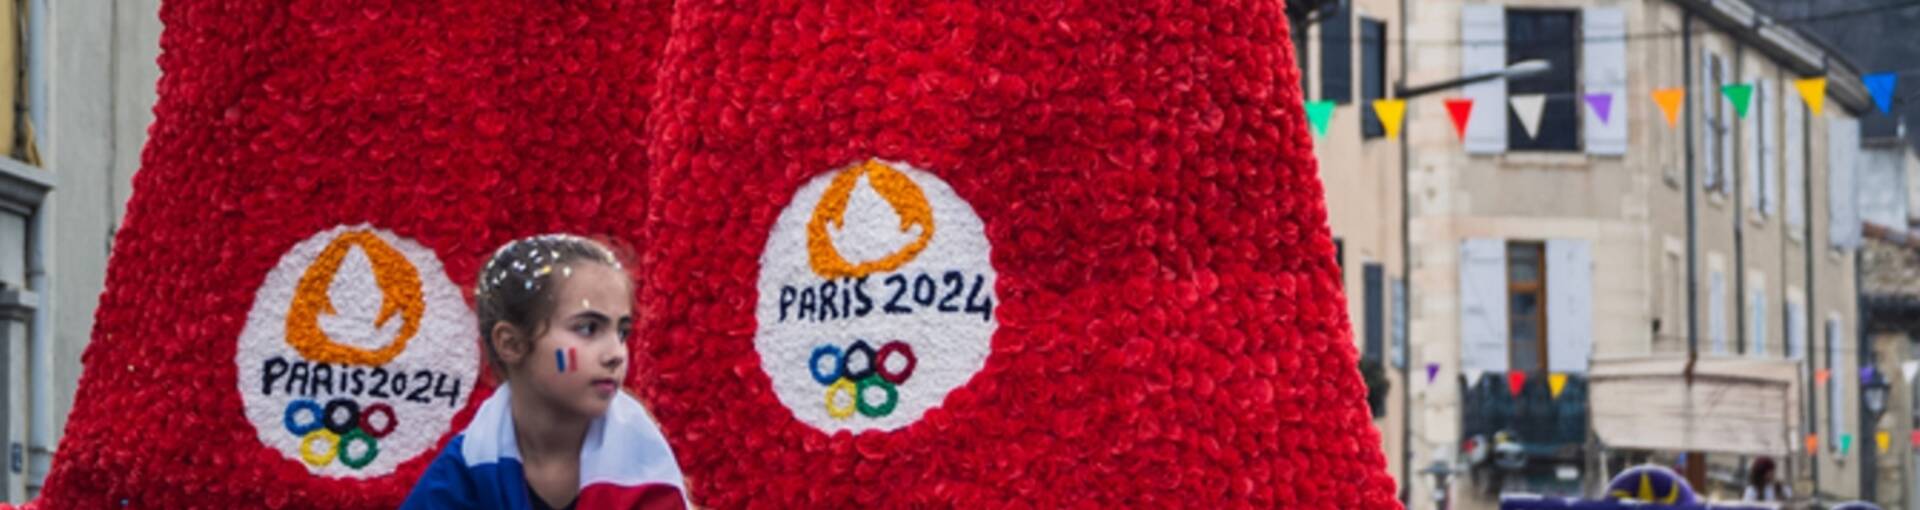 Mascotte jeux olympiques Paris 2024